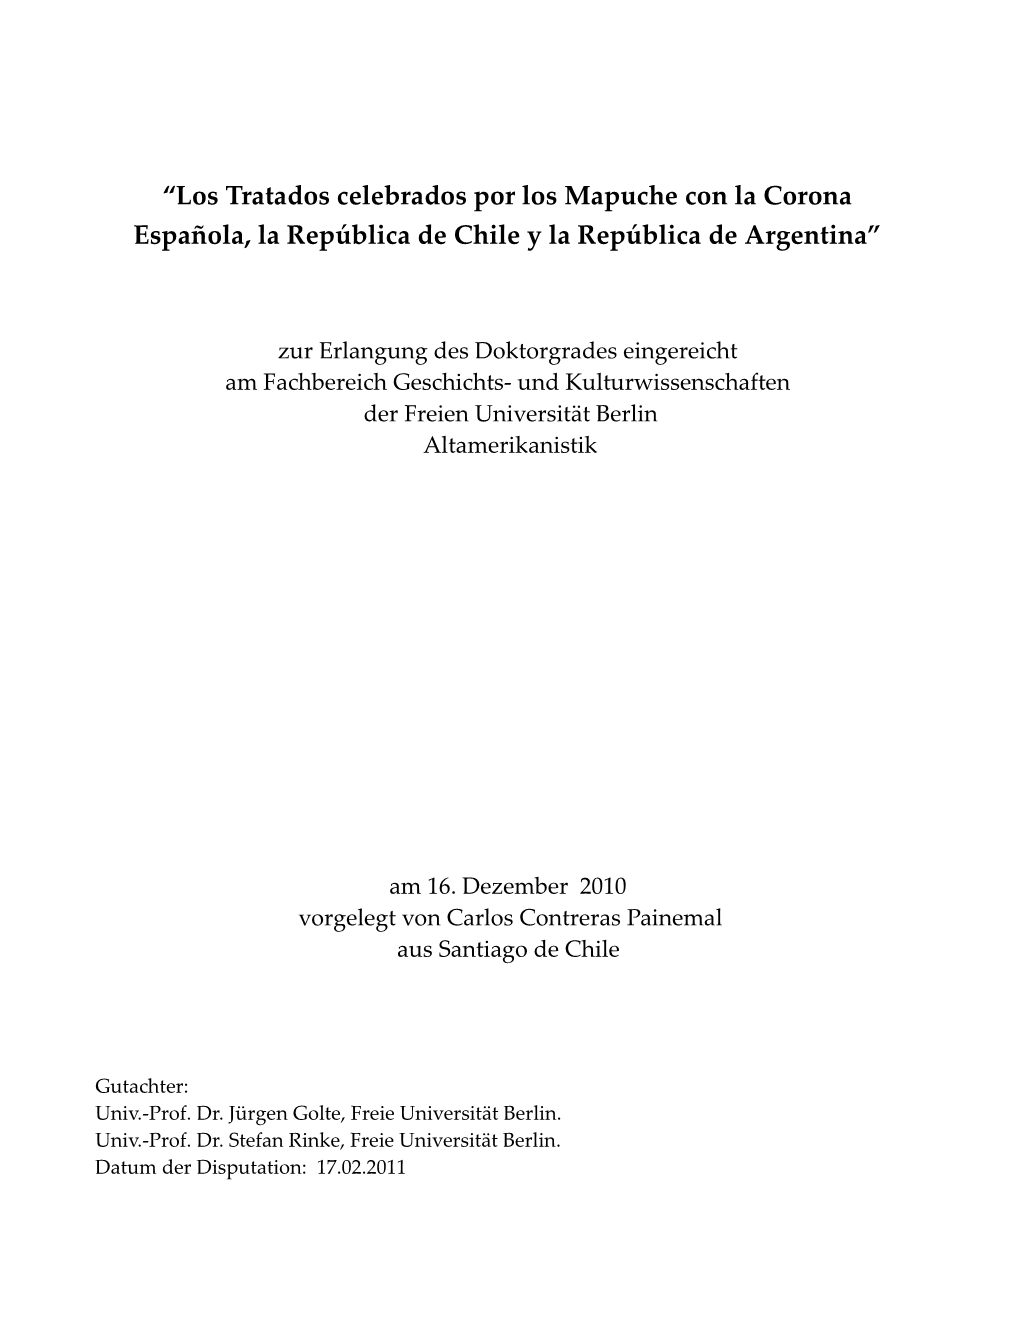 “Los Tratados Celebrados Por Los Mapuche Con La Corona Española, La República De Chile Y La República De Argentina”